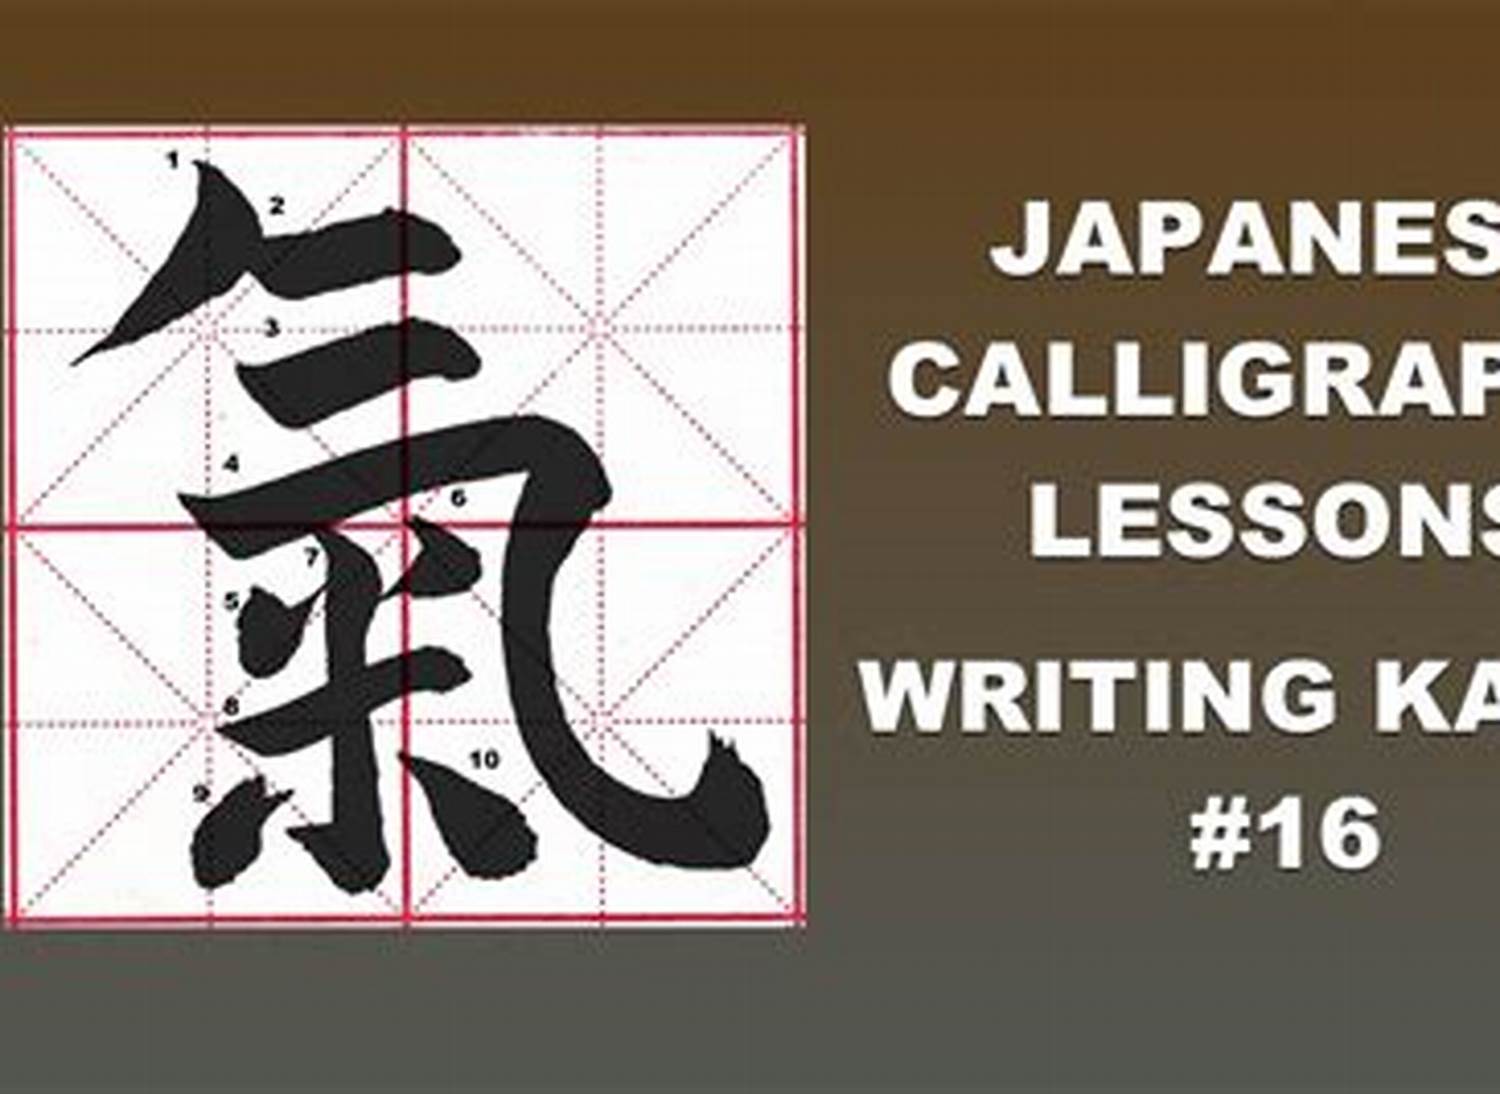 Ki in japanese writing